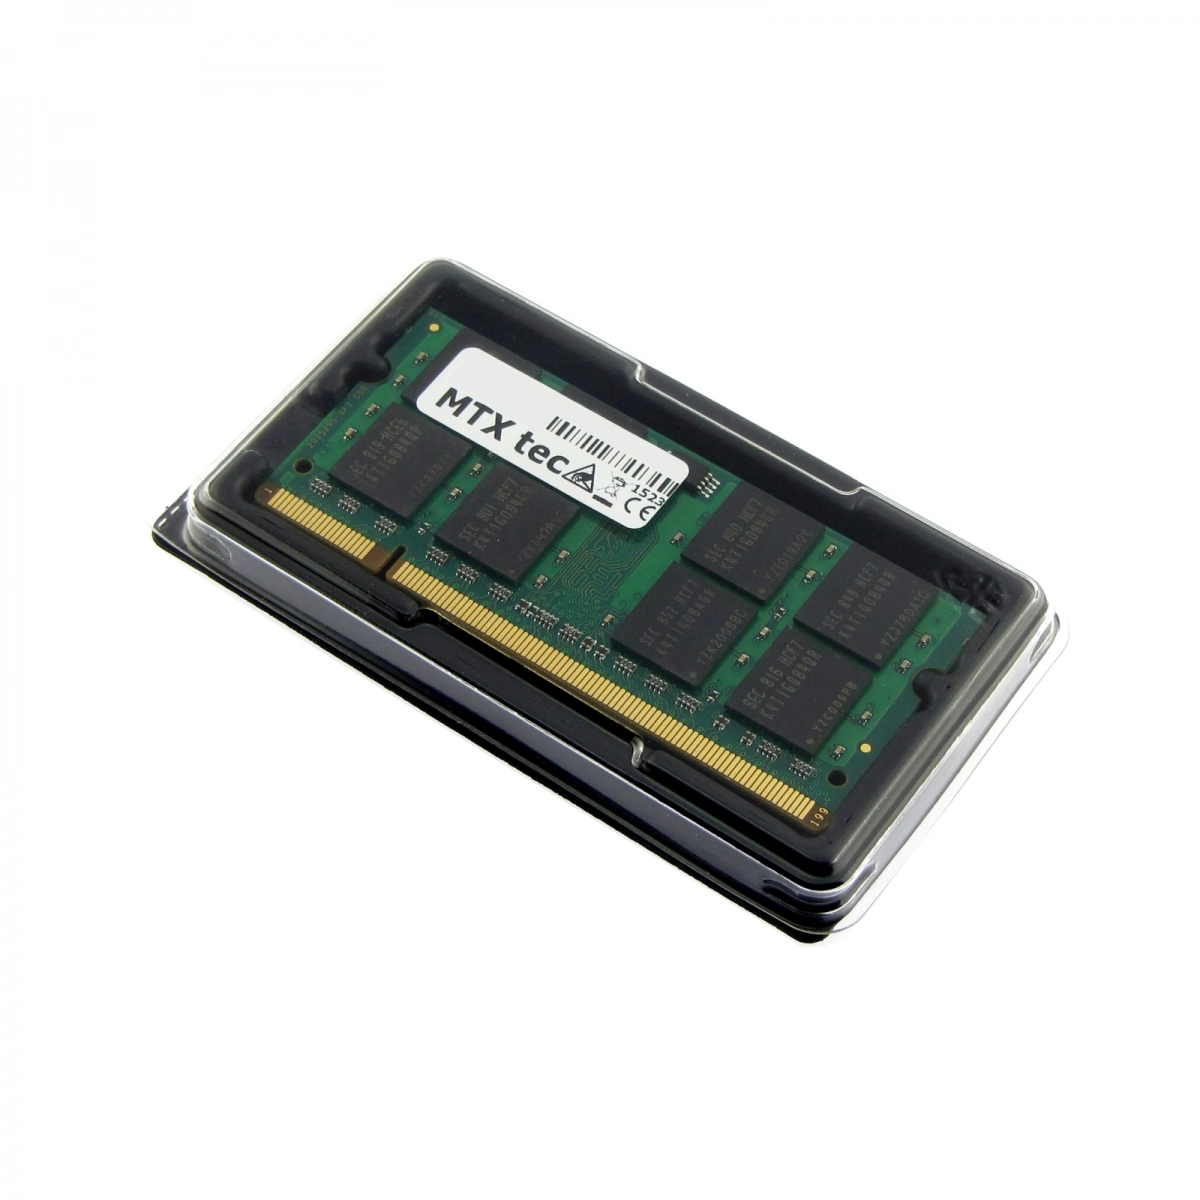 MTXtec Arbeitsspeicher 2 GB RAM für SONY Vaio VGN-AR61M